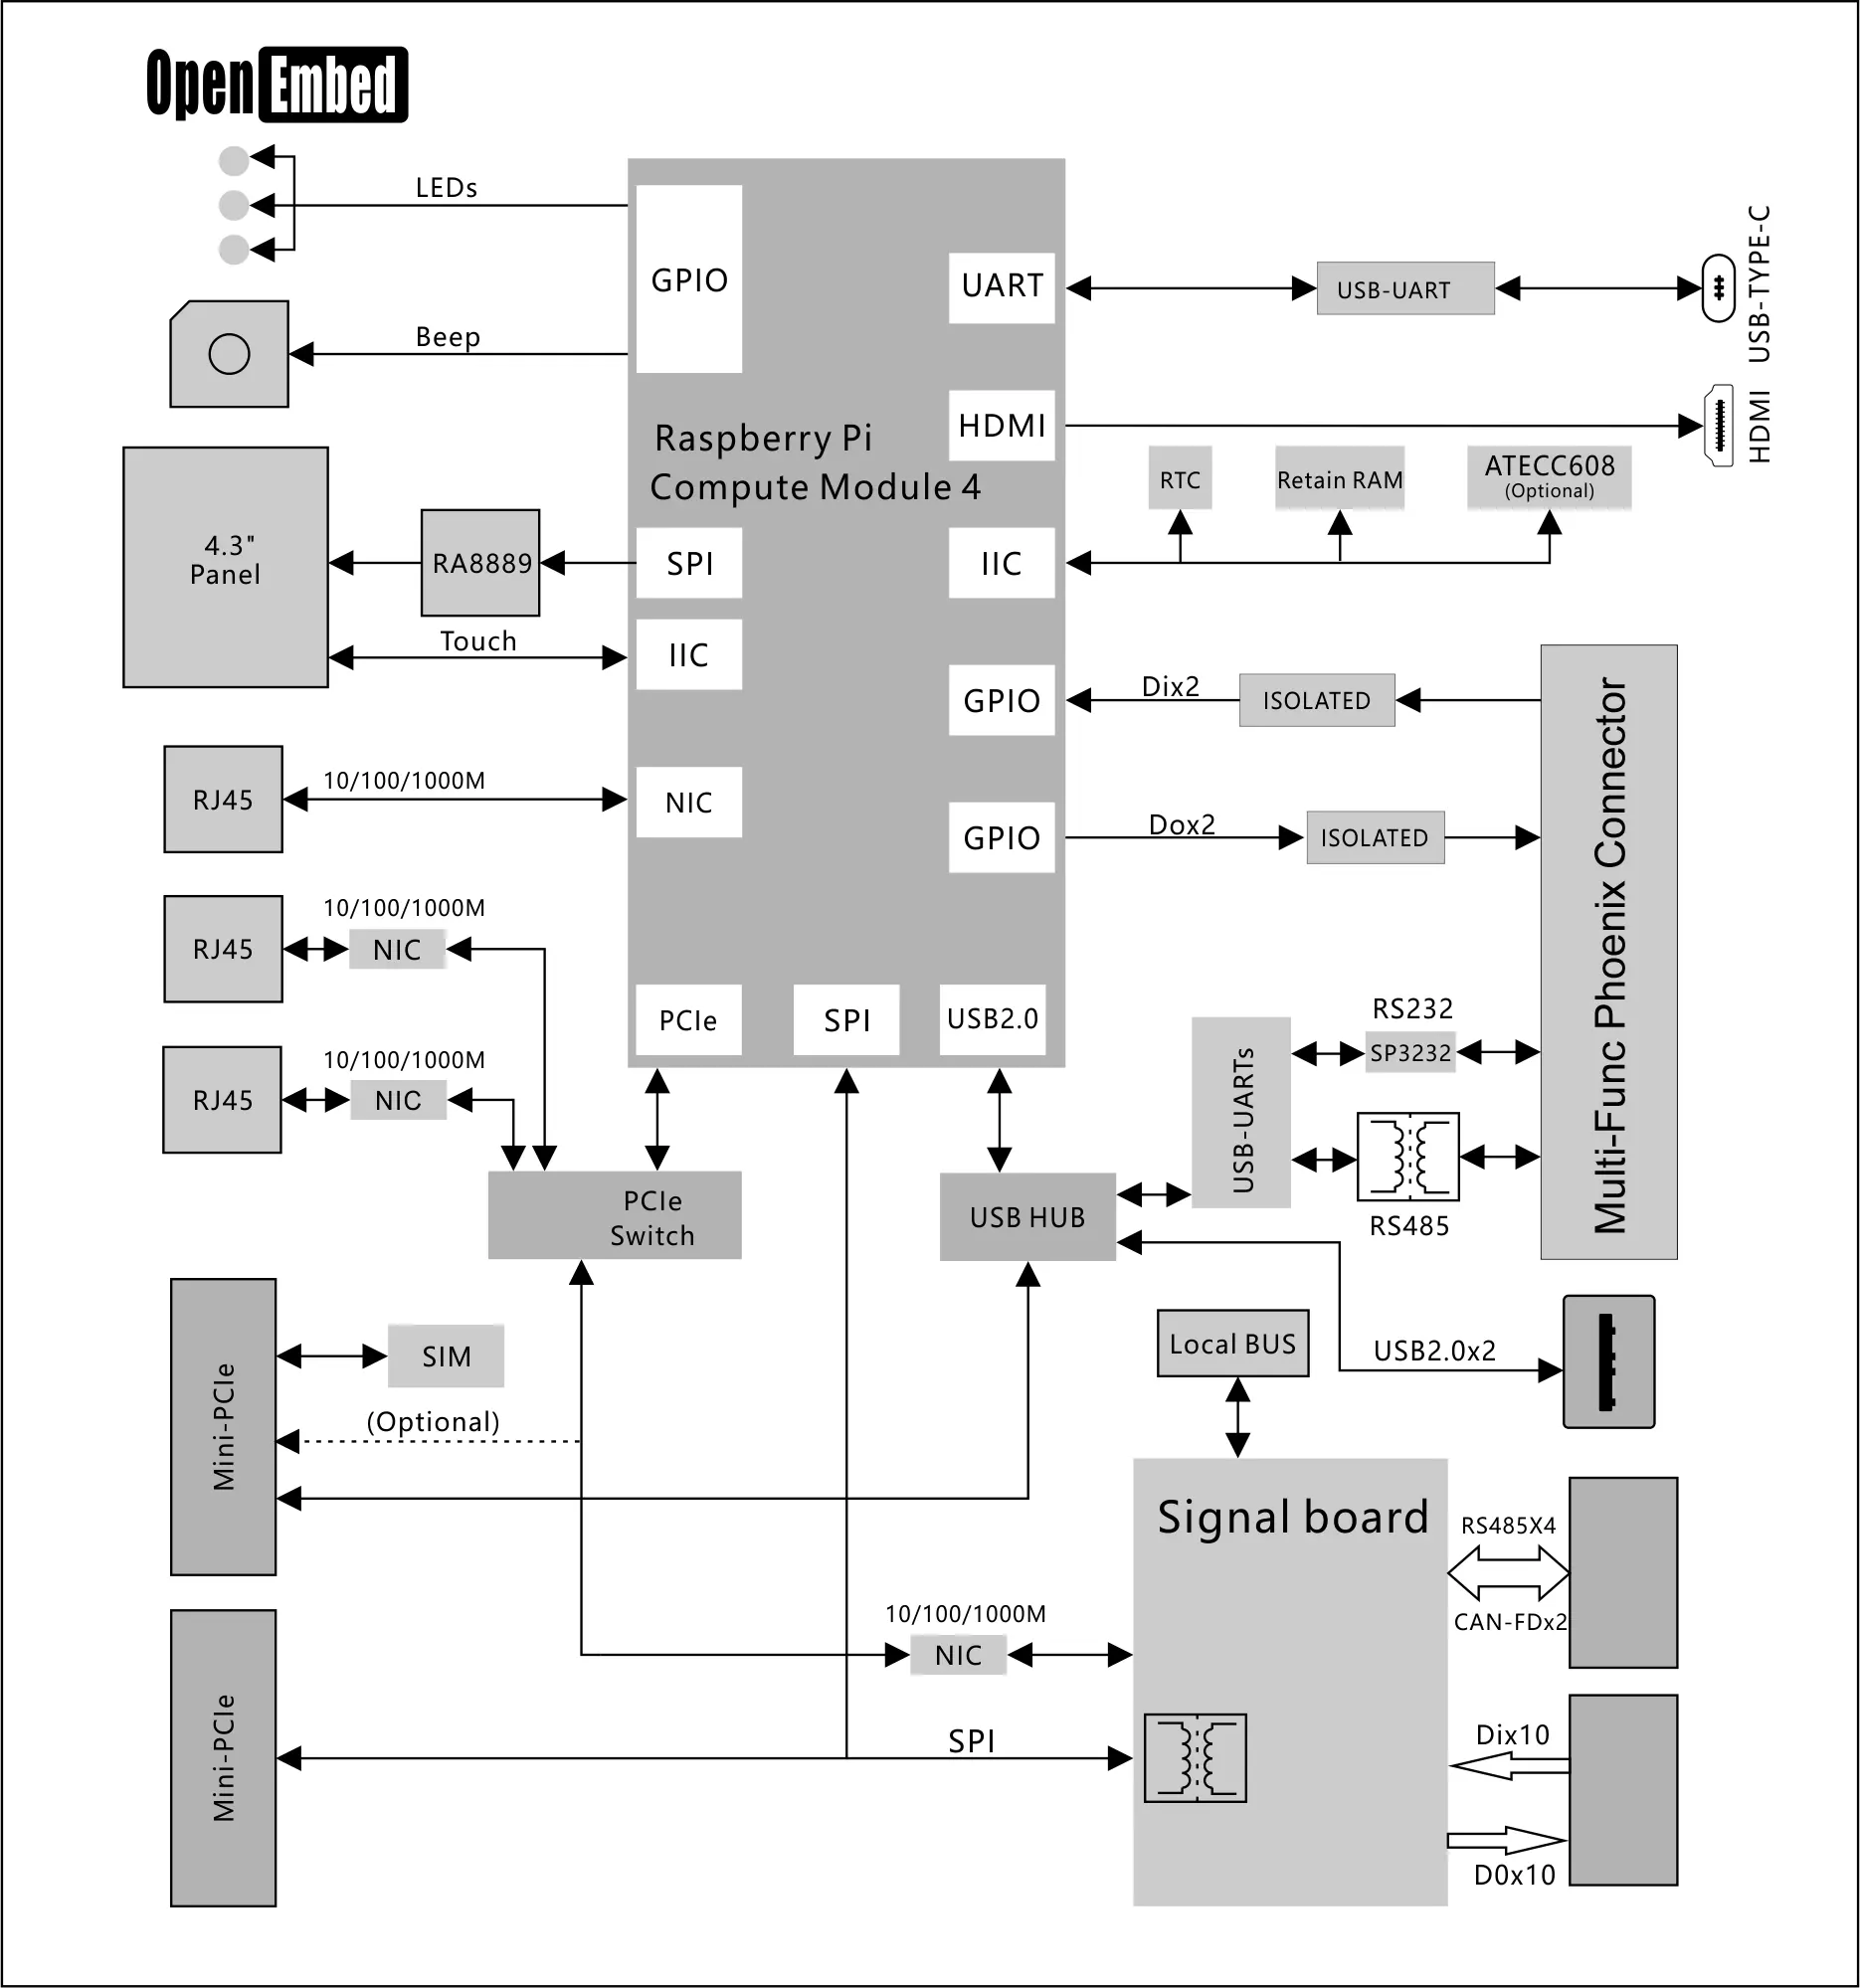 RJ45, HDMI, DI, DO, RS232, CAN BUS ile otomasyon ve kontrol sistemleri uygulaması